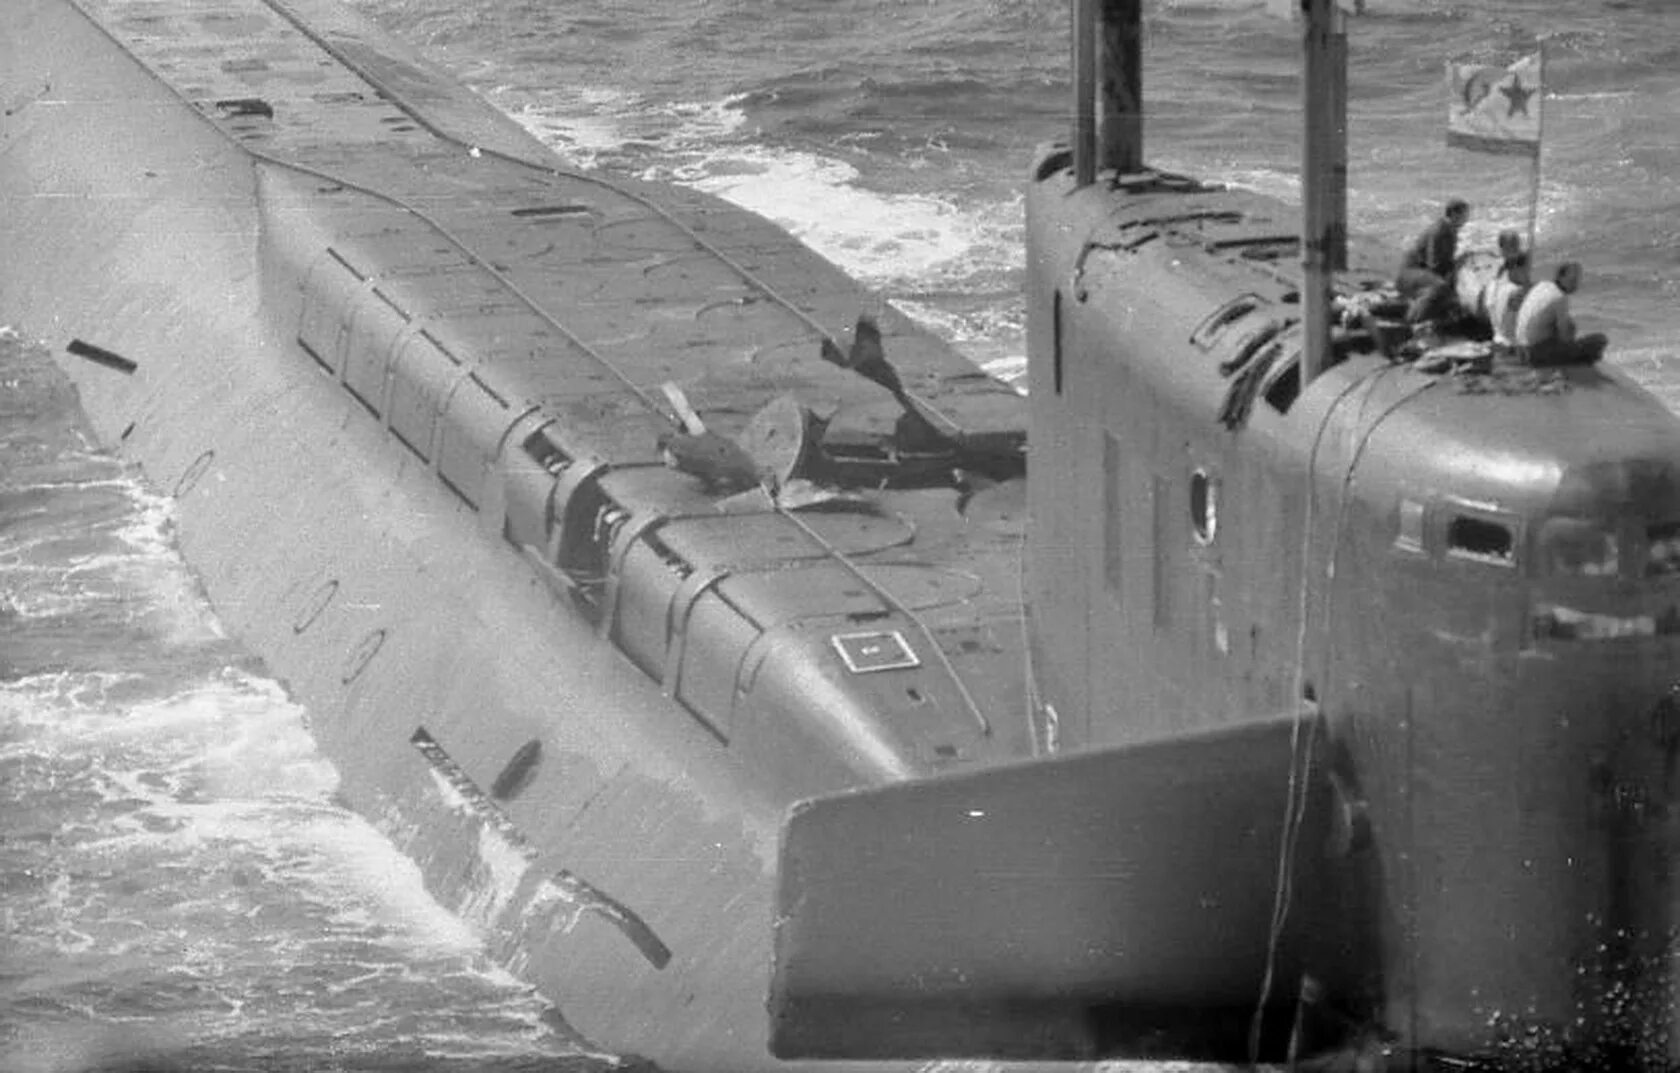 Пл ка. К-219 атомная подводная лодка. Подводная лодка 667а. 667а проект подводная лодка. Подлодка СССР К 219.